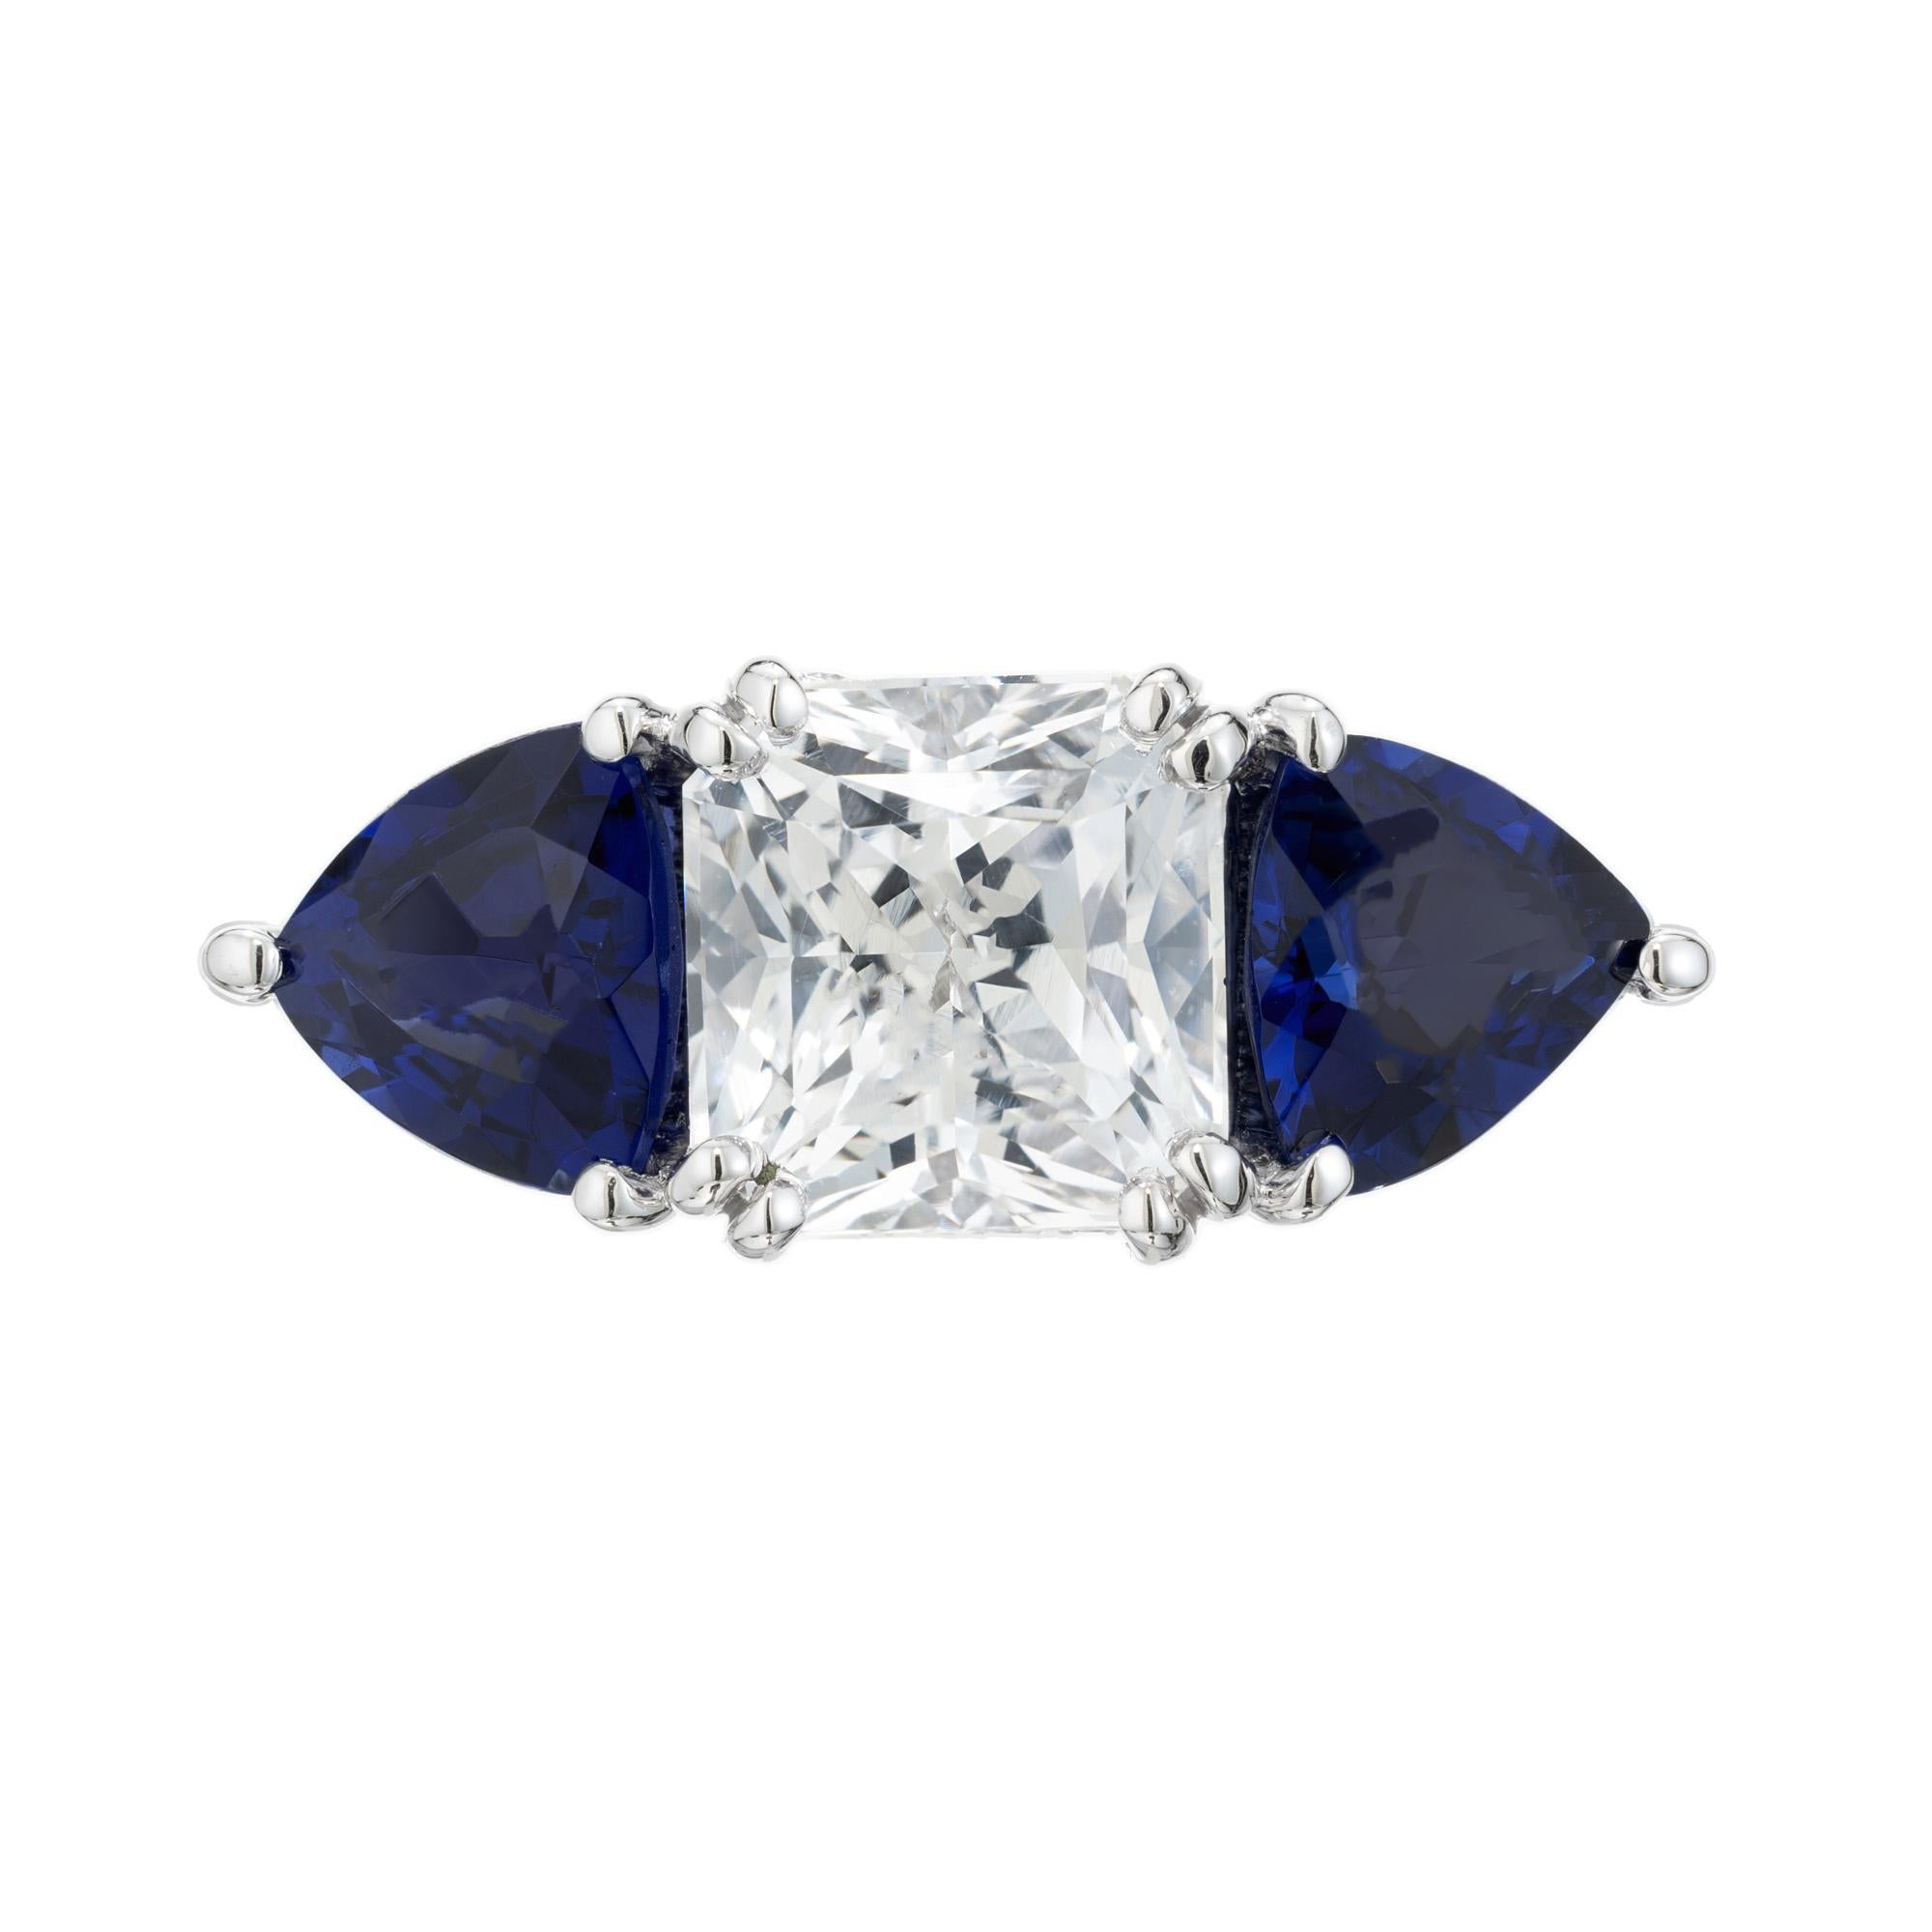 Einzigartiger Verlobungsring mit Saphir und Diamant. Dieser Ring hat einen GIA-zertifizierten achteckigen weißen Saphir mit 2,22 Oktaven in der Mitte, der in einer Platinfassung mit drei Steinen gefasst ist, die auf jeder Seite mit einem blauen